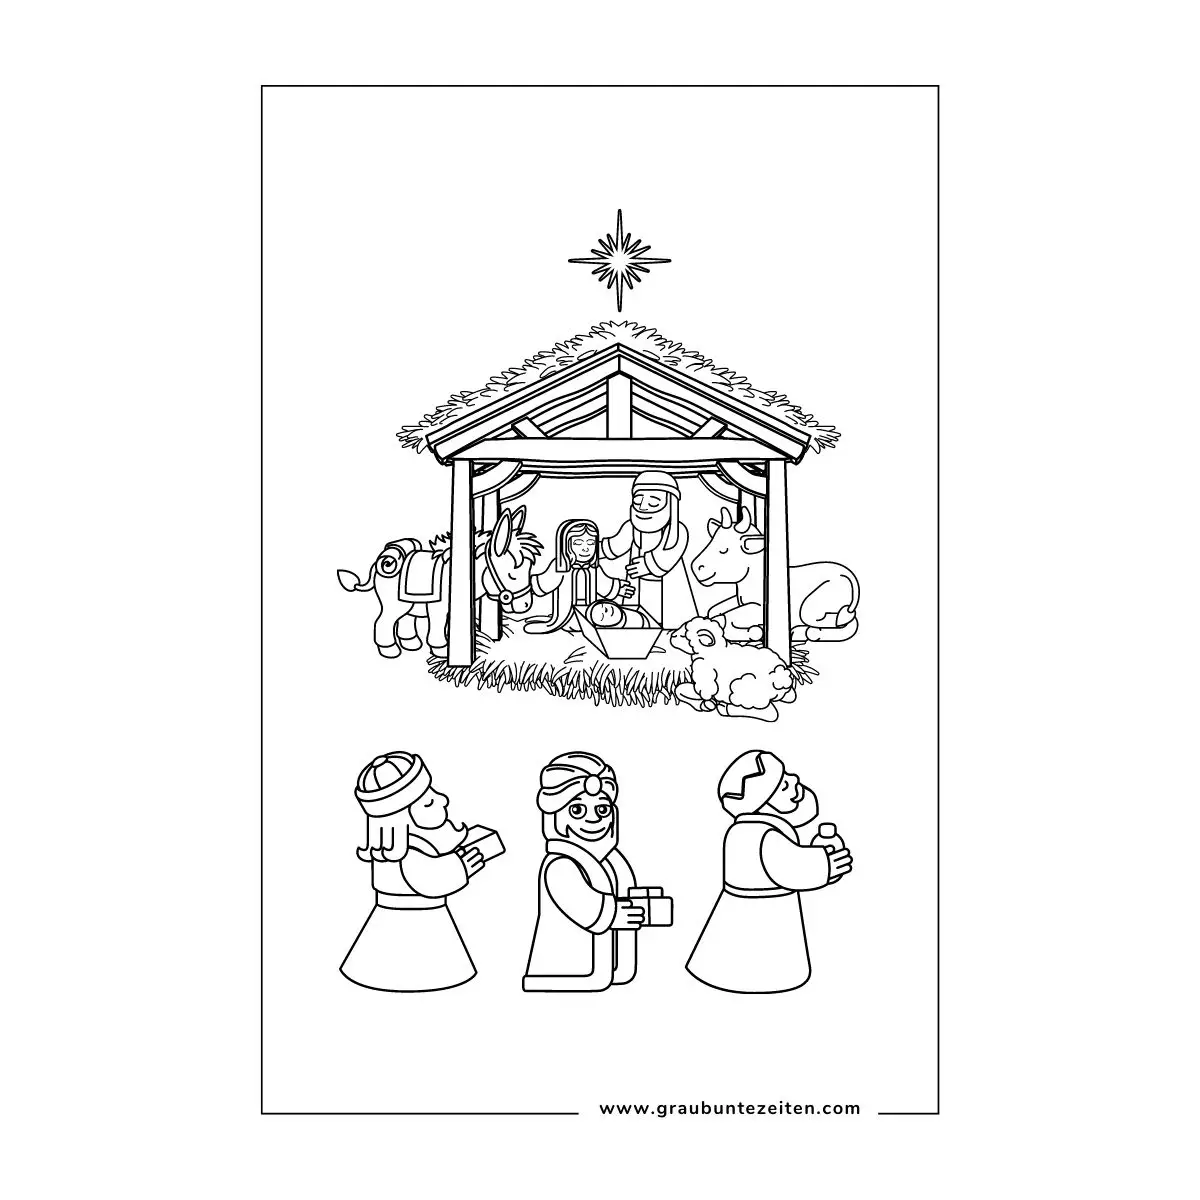 Ausmalbild. Die Heiligen Drei Könige bringen dem Jesuskind ihre Geschenke.